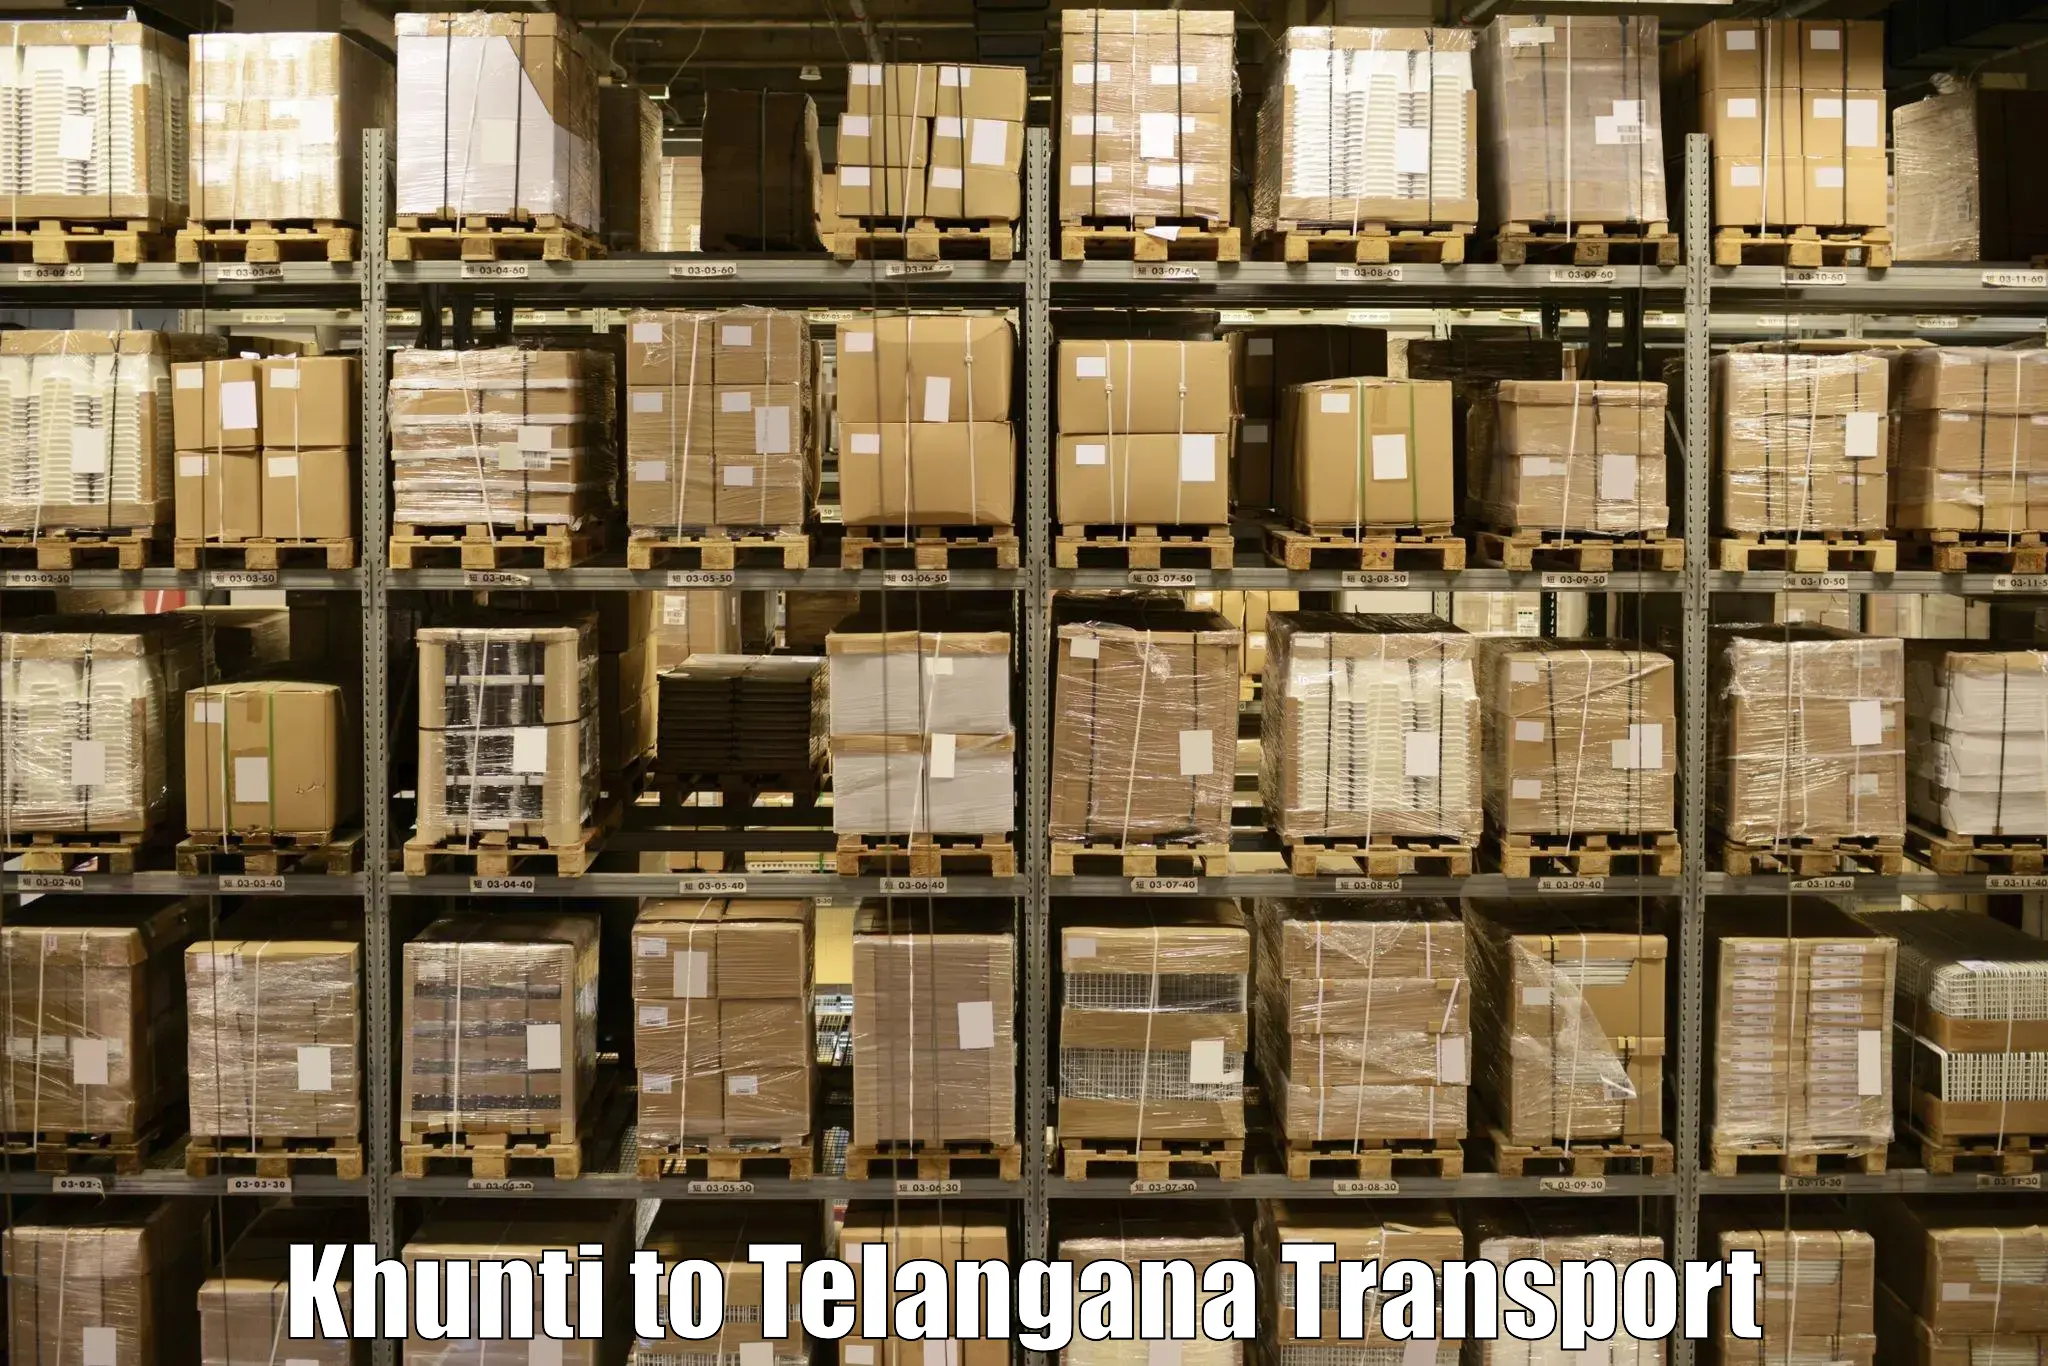 Daily transport service Khunti to Jogulamba Gadwal